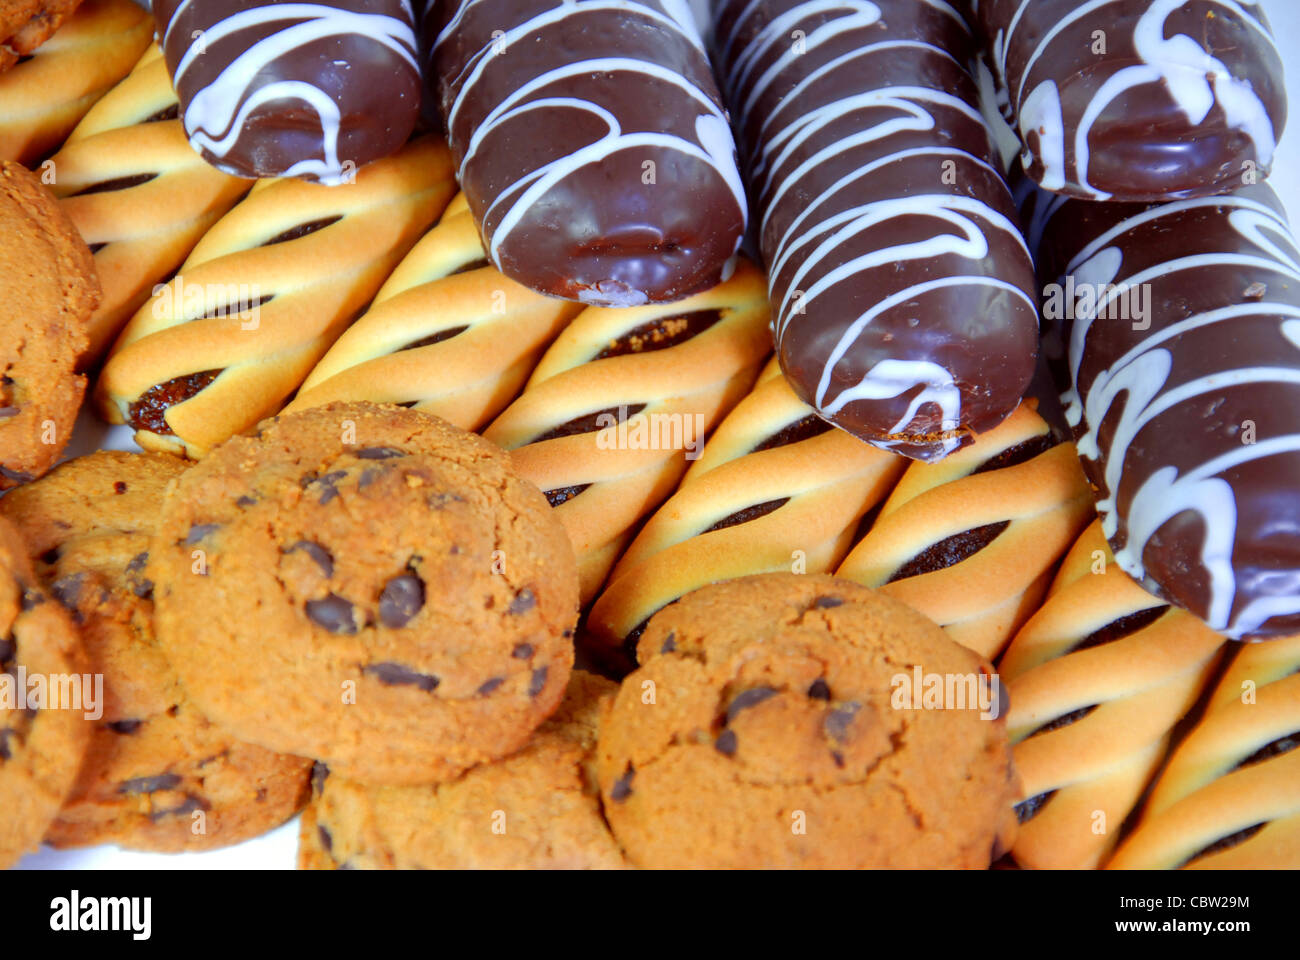 Abundante galletas caseras con sabor a fruta y sabor chocolate Foto de stock